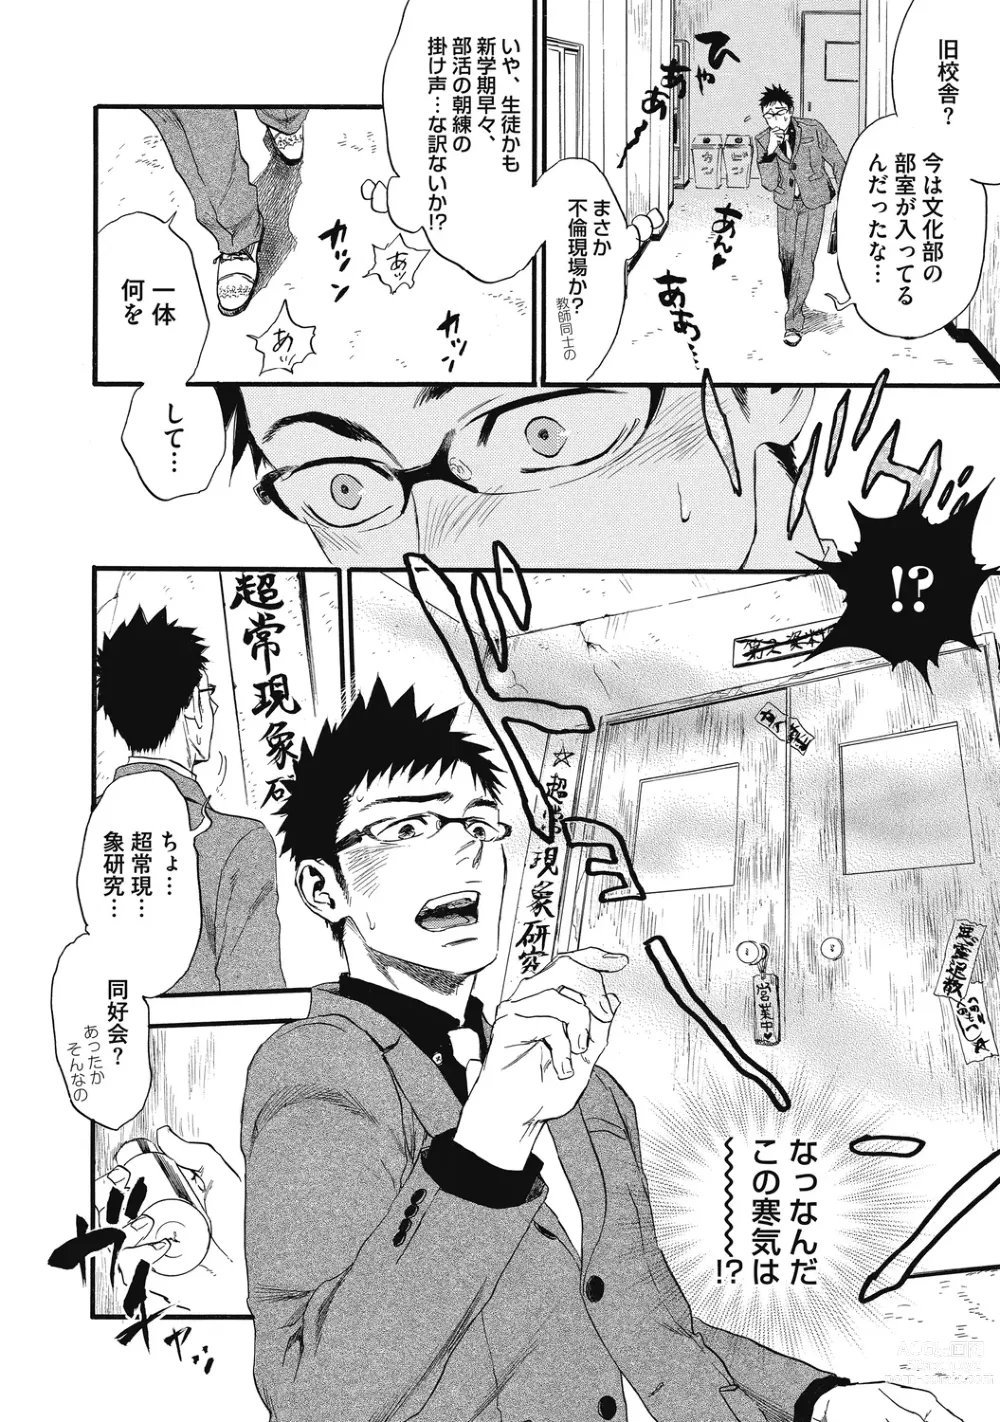 Page 8 of manga Mashounen